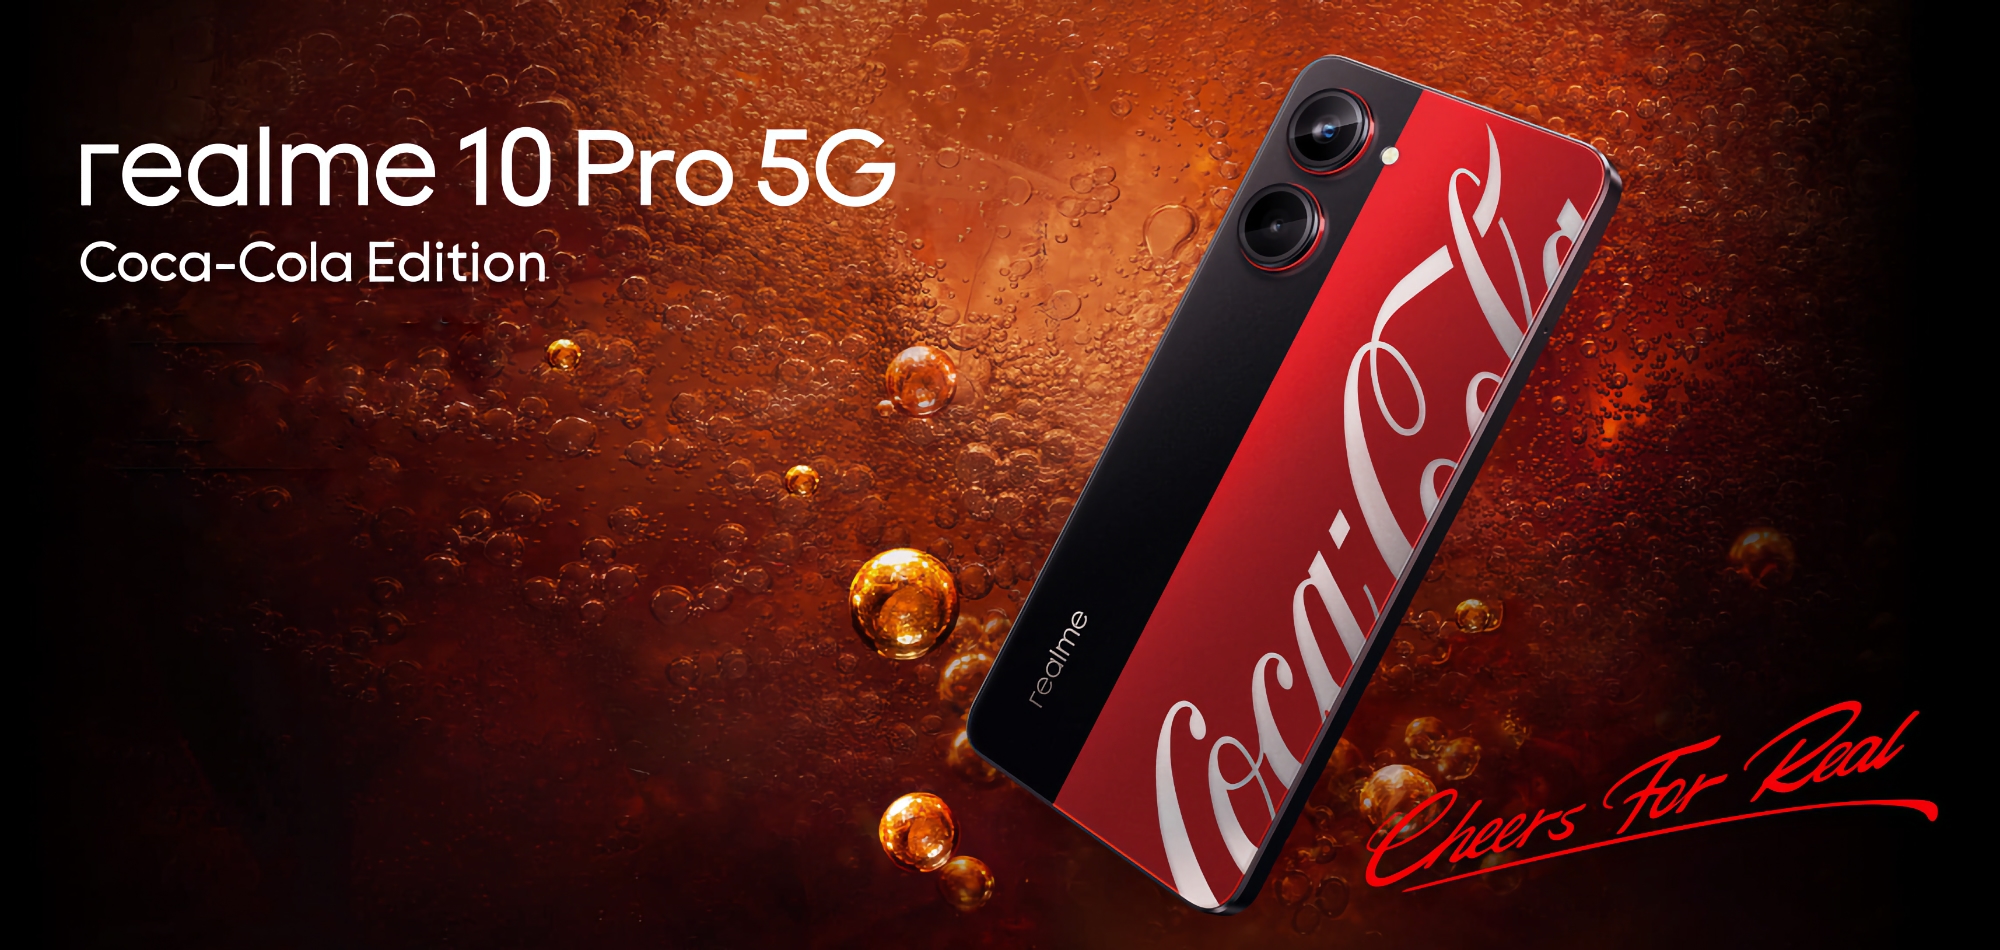 Oto jak będzie wyglądał Realme 10 Pro 5G Coca-Cola Edition